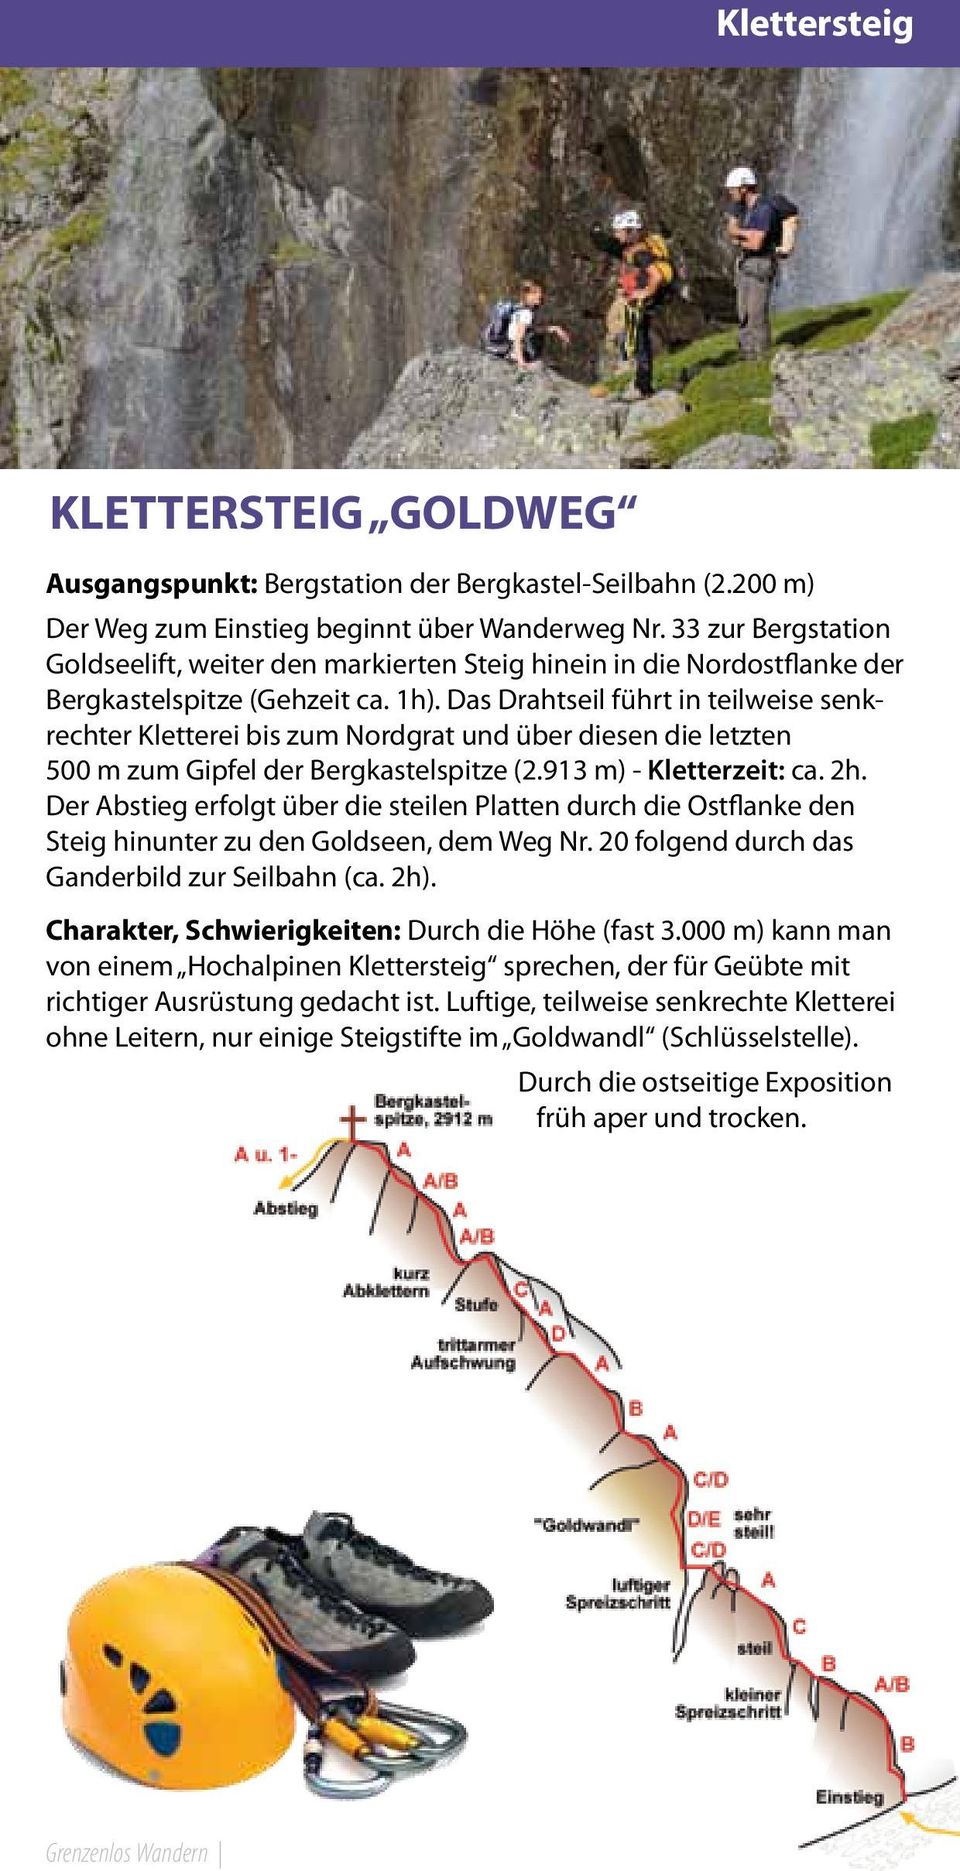 Das Drahtseil führt in teilweise senkrechter Kletterei bis zum Nordgrat und über diesen die letzten 00 m zum Gipfel der Bergkastelspitze (2.13 m) - Kletterzeit: ca. 2h.